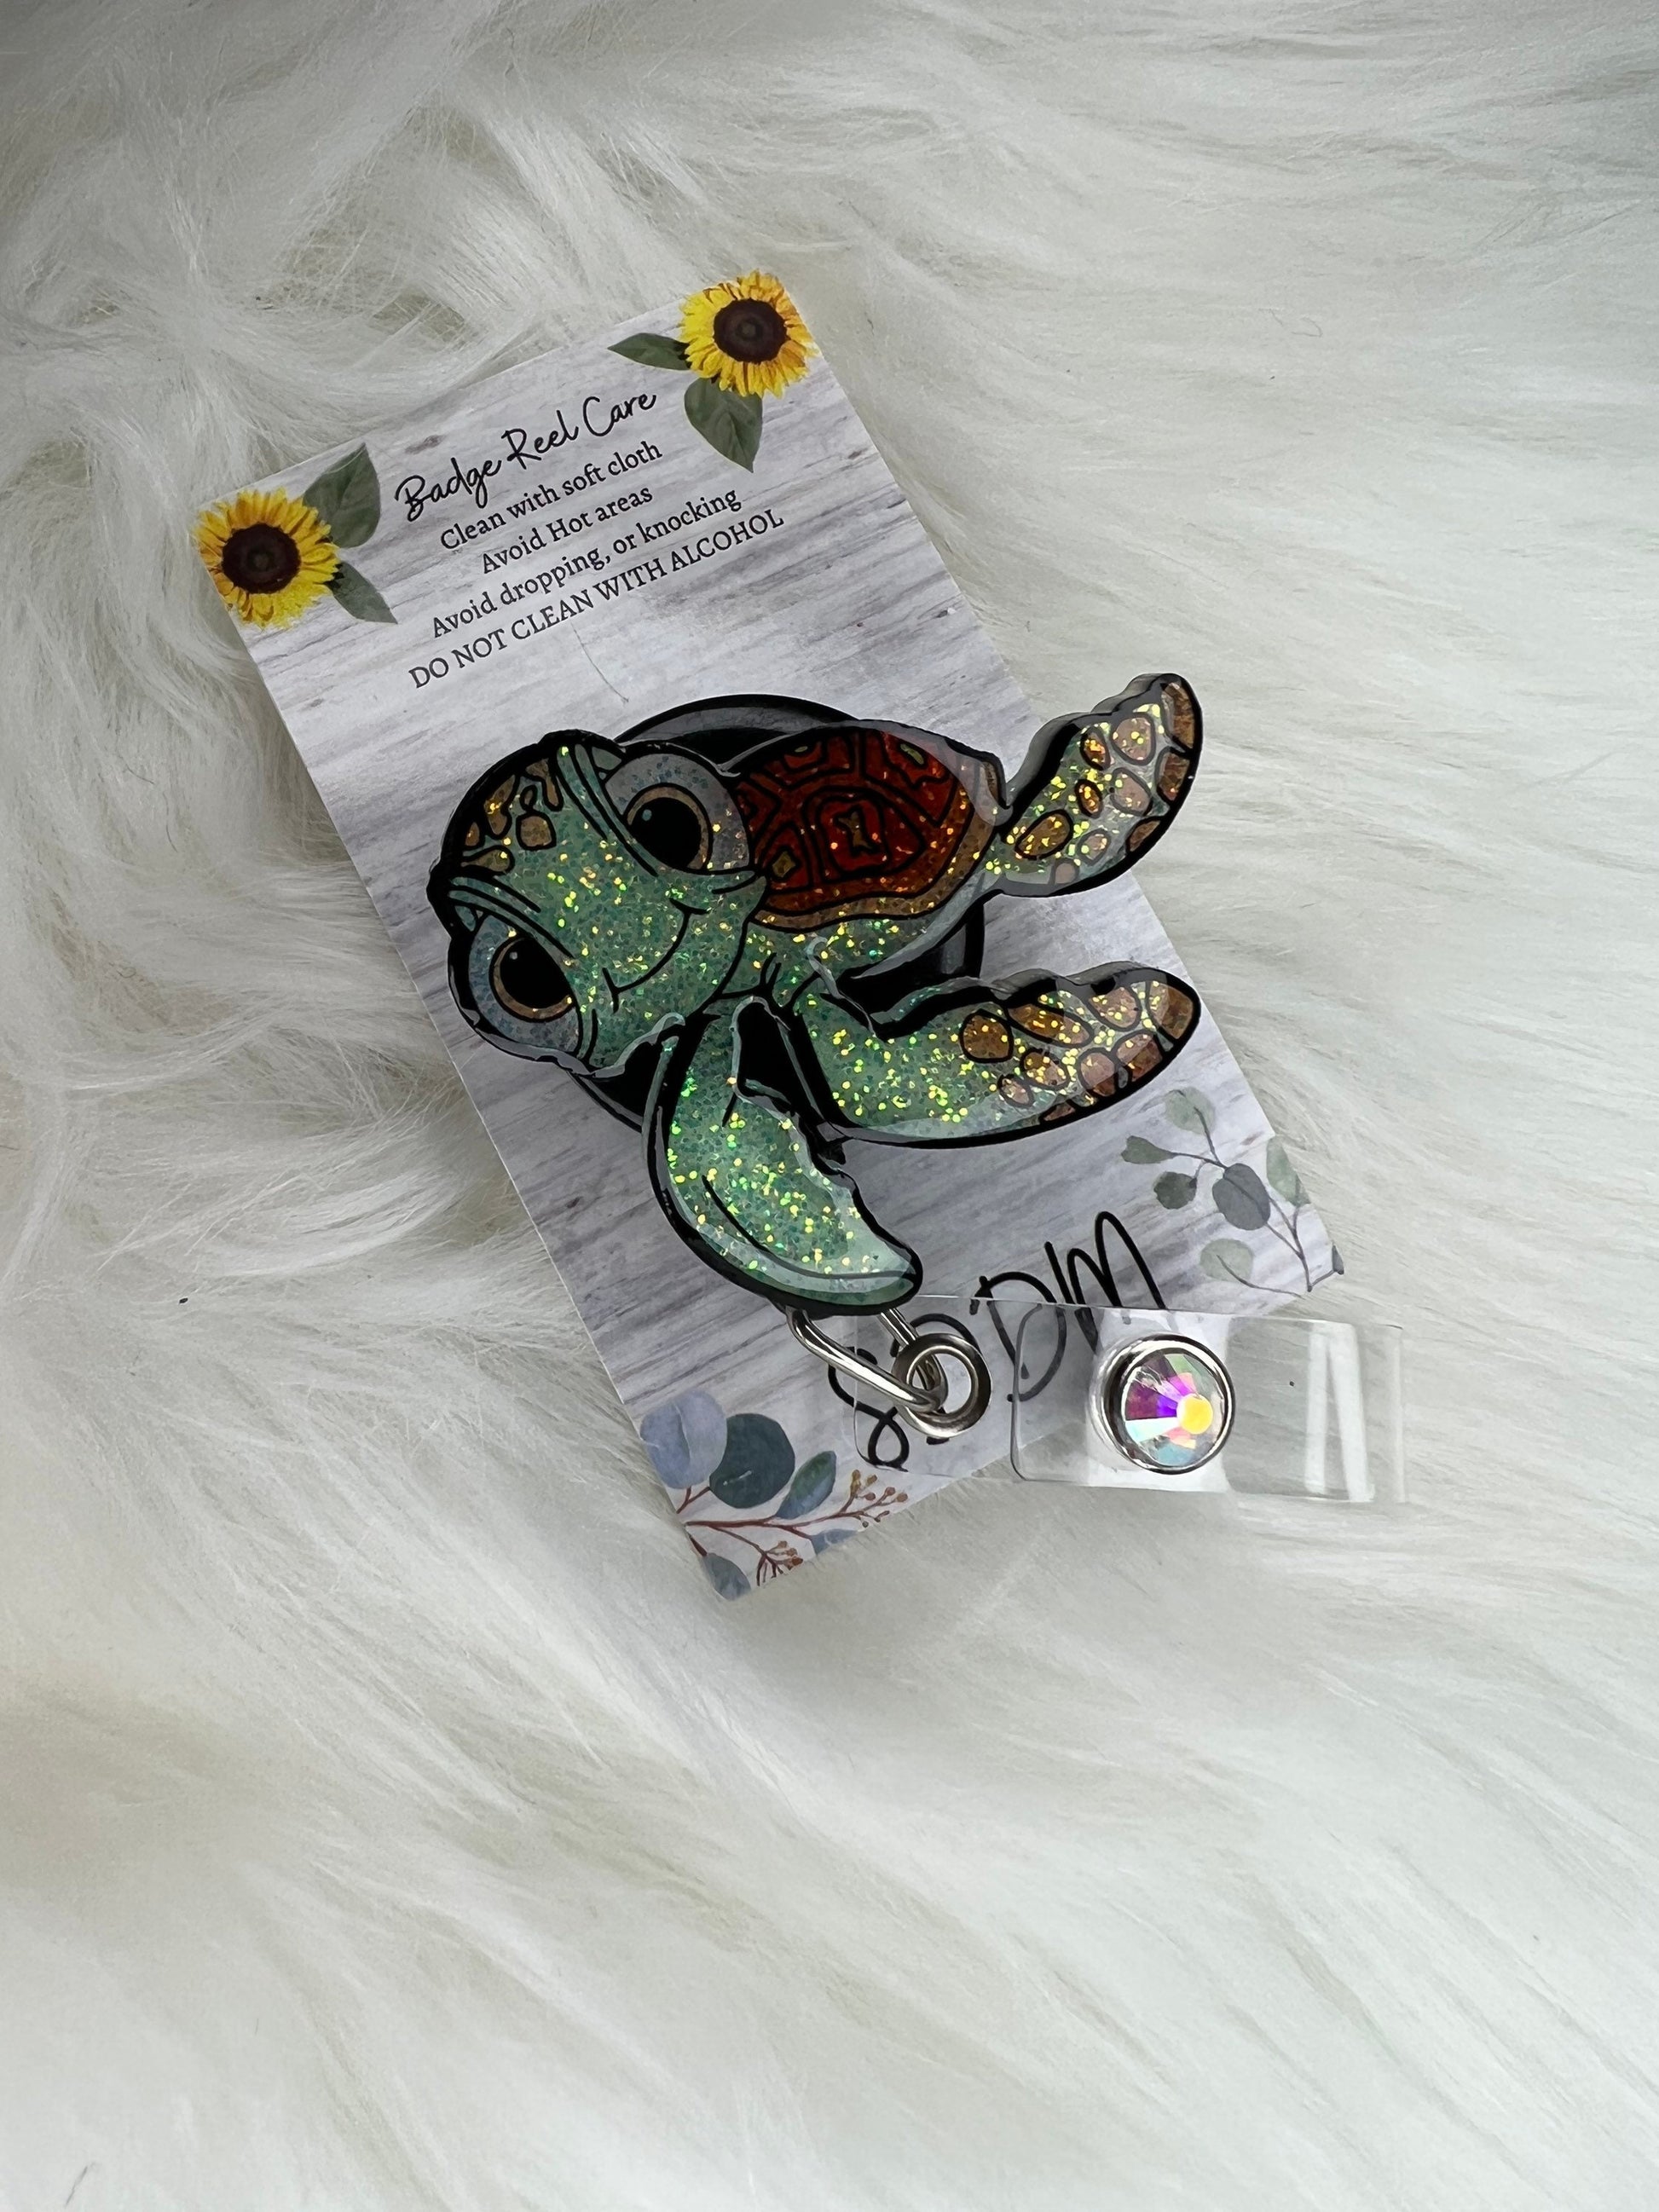 Cute Baby Turtle inspired Badge Reel-Cute Nurse badge reel-Nurse Badge Holder-personalized gifts